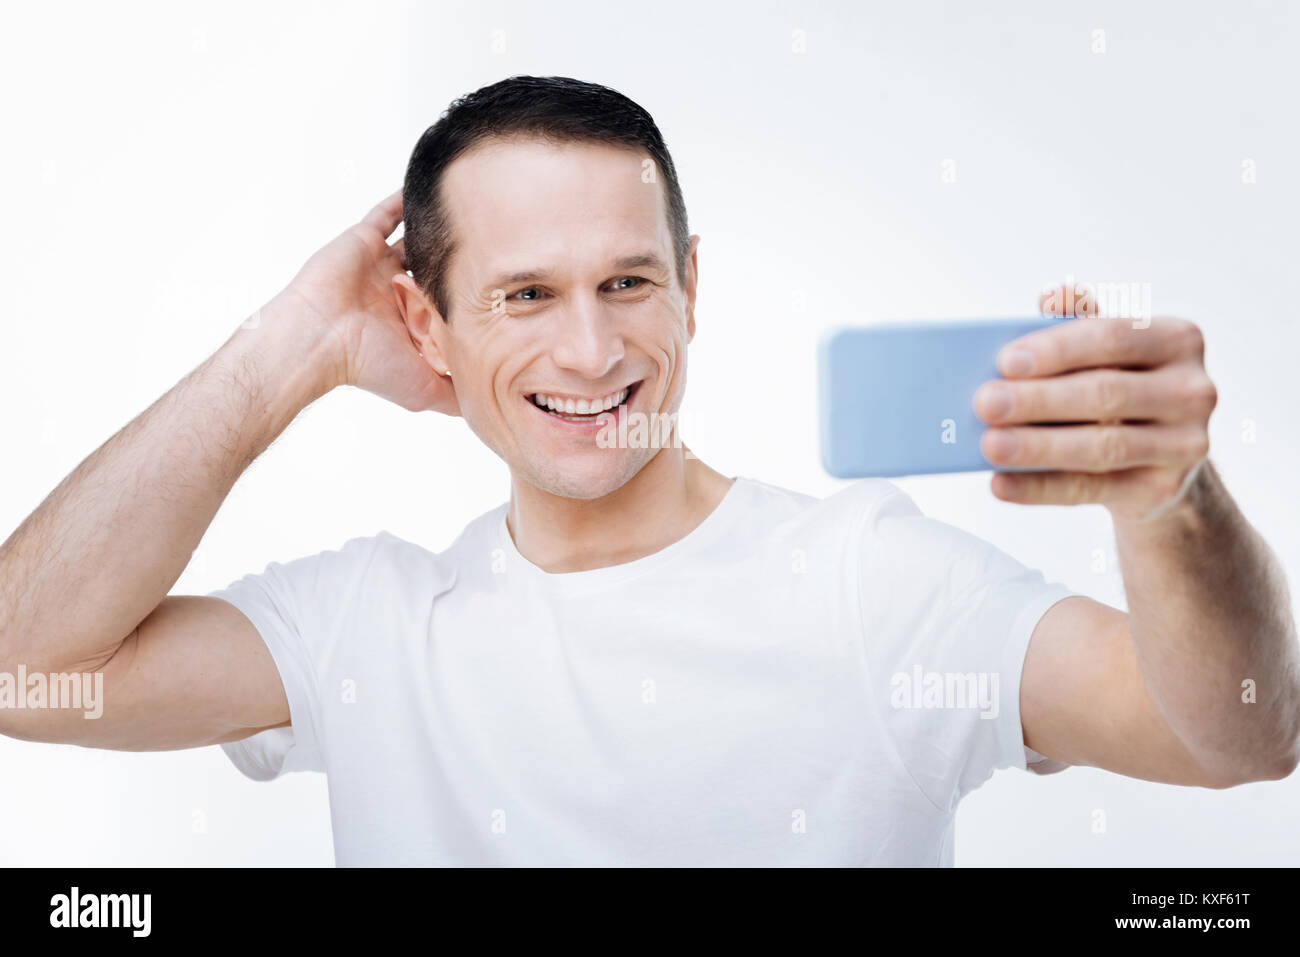 Joyful nice man posing for selfie Stock Photo